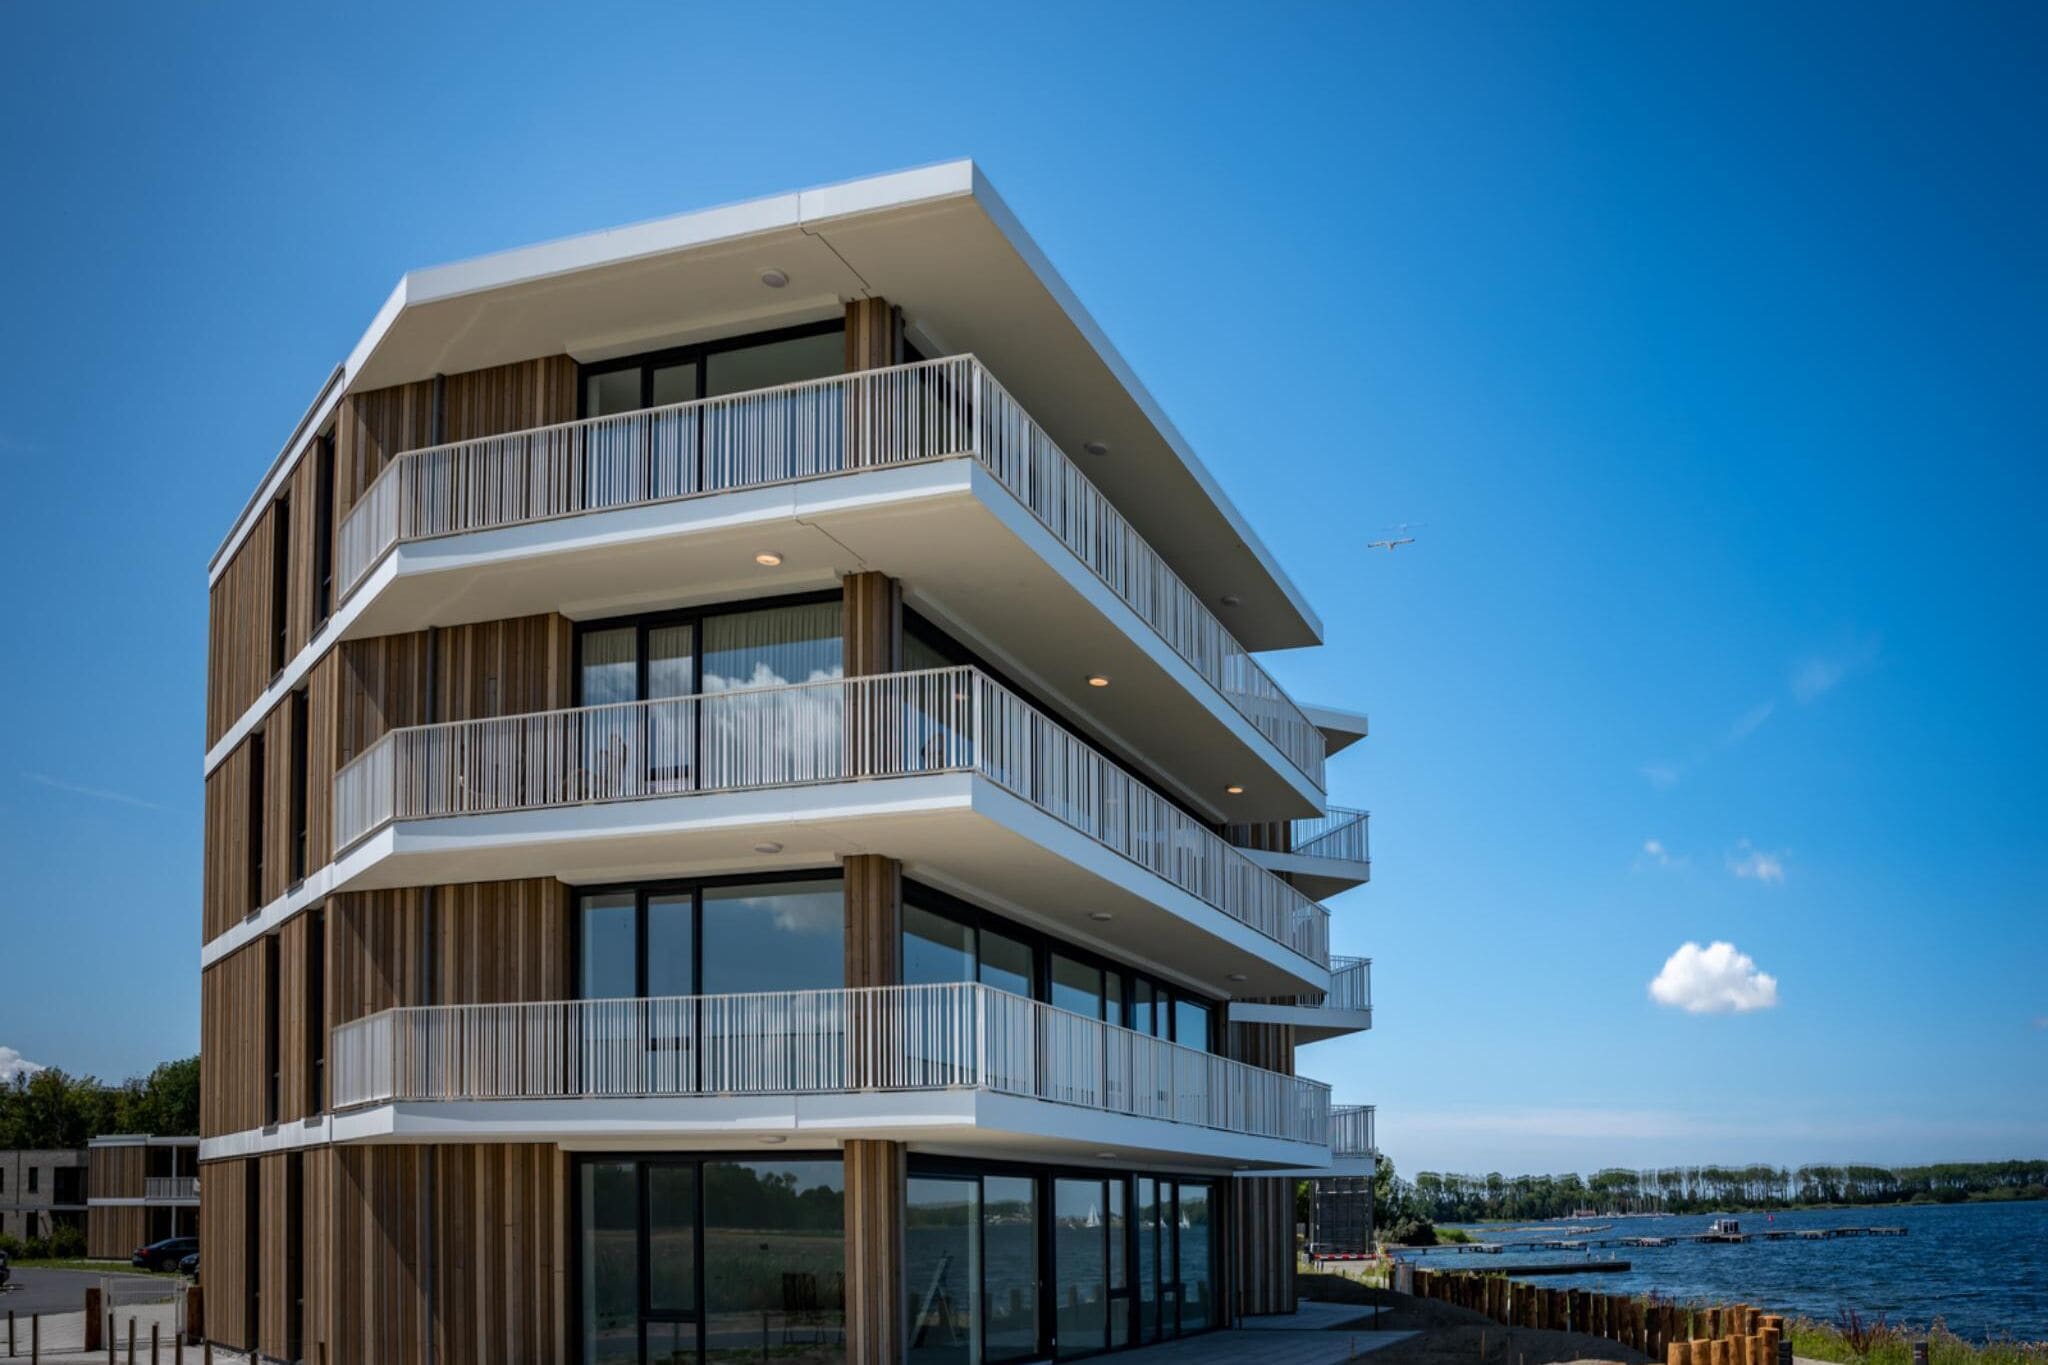 Ruim modern appartement met uitzicht op water